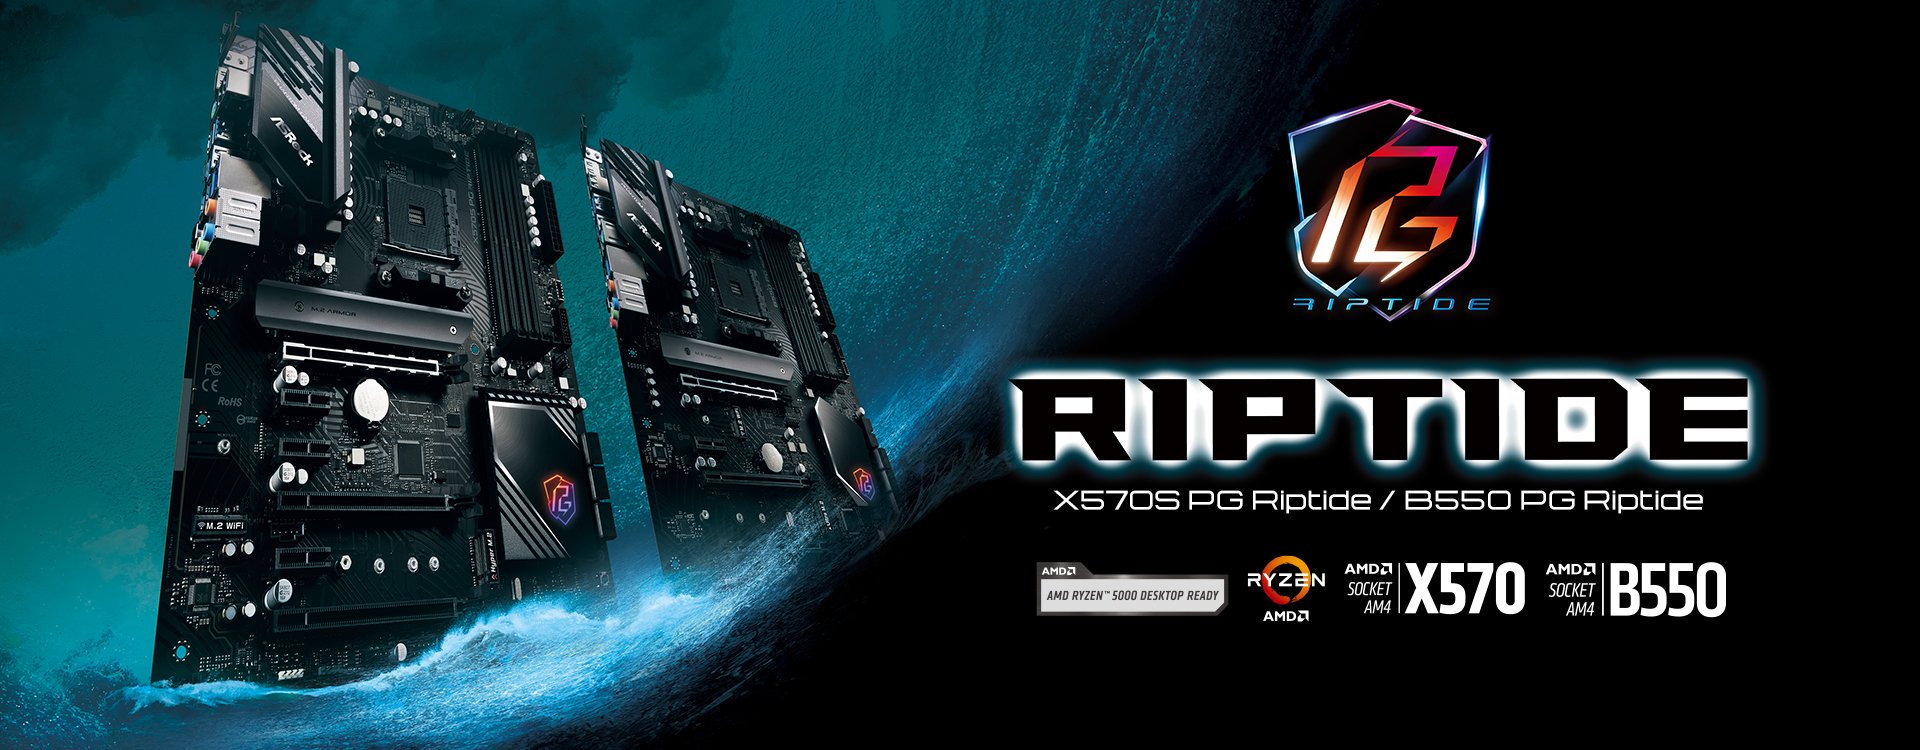 X570S PG Riptide Launch